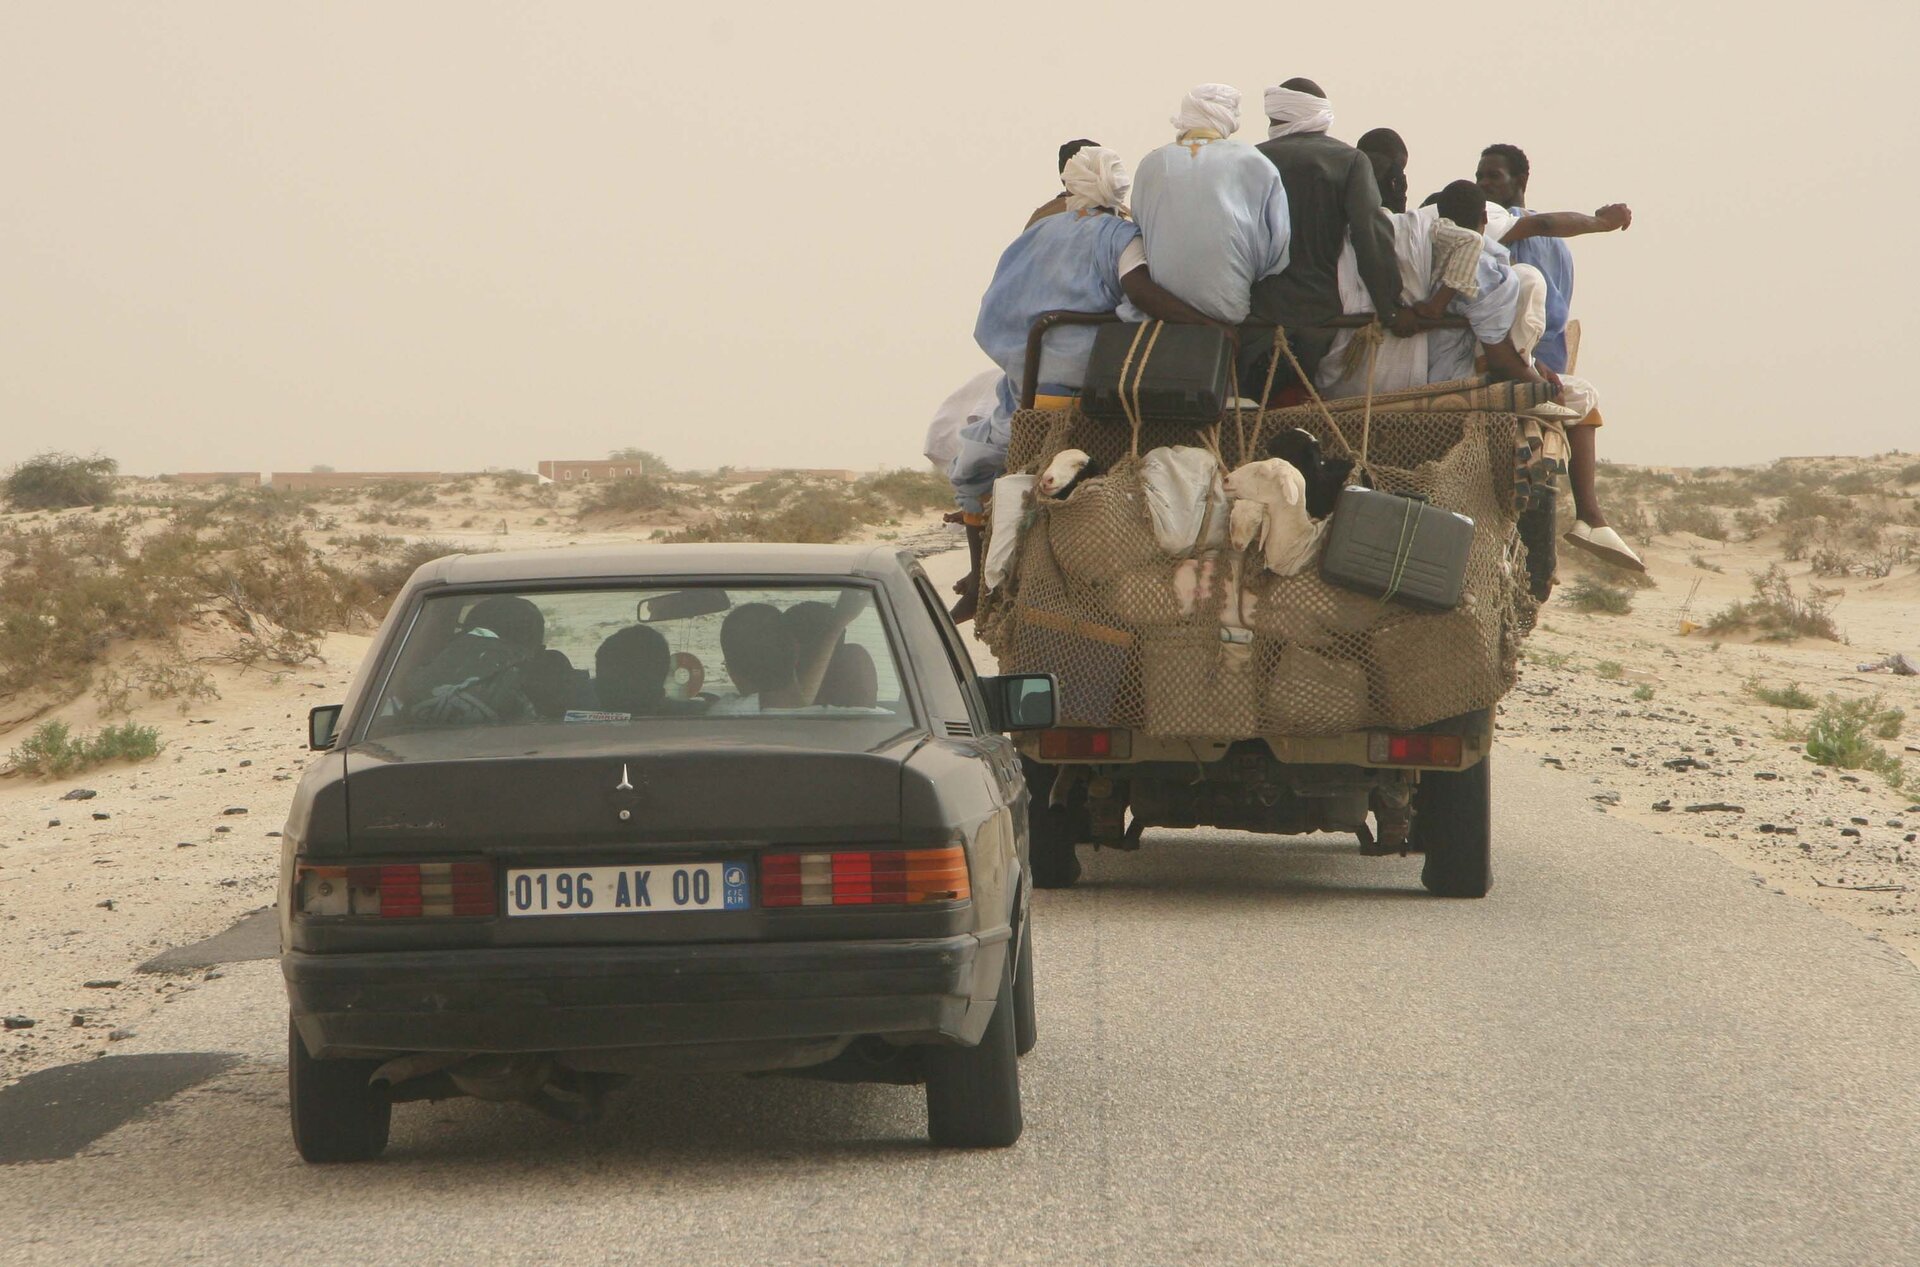 Na zdjęciu dwa samochody (osobowy i pick‑up) na drodze w piaszczystym terenie. Samochody są zatłoczone. Na pick‑upie jest mnóstwo bagaży i pasażerów.